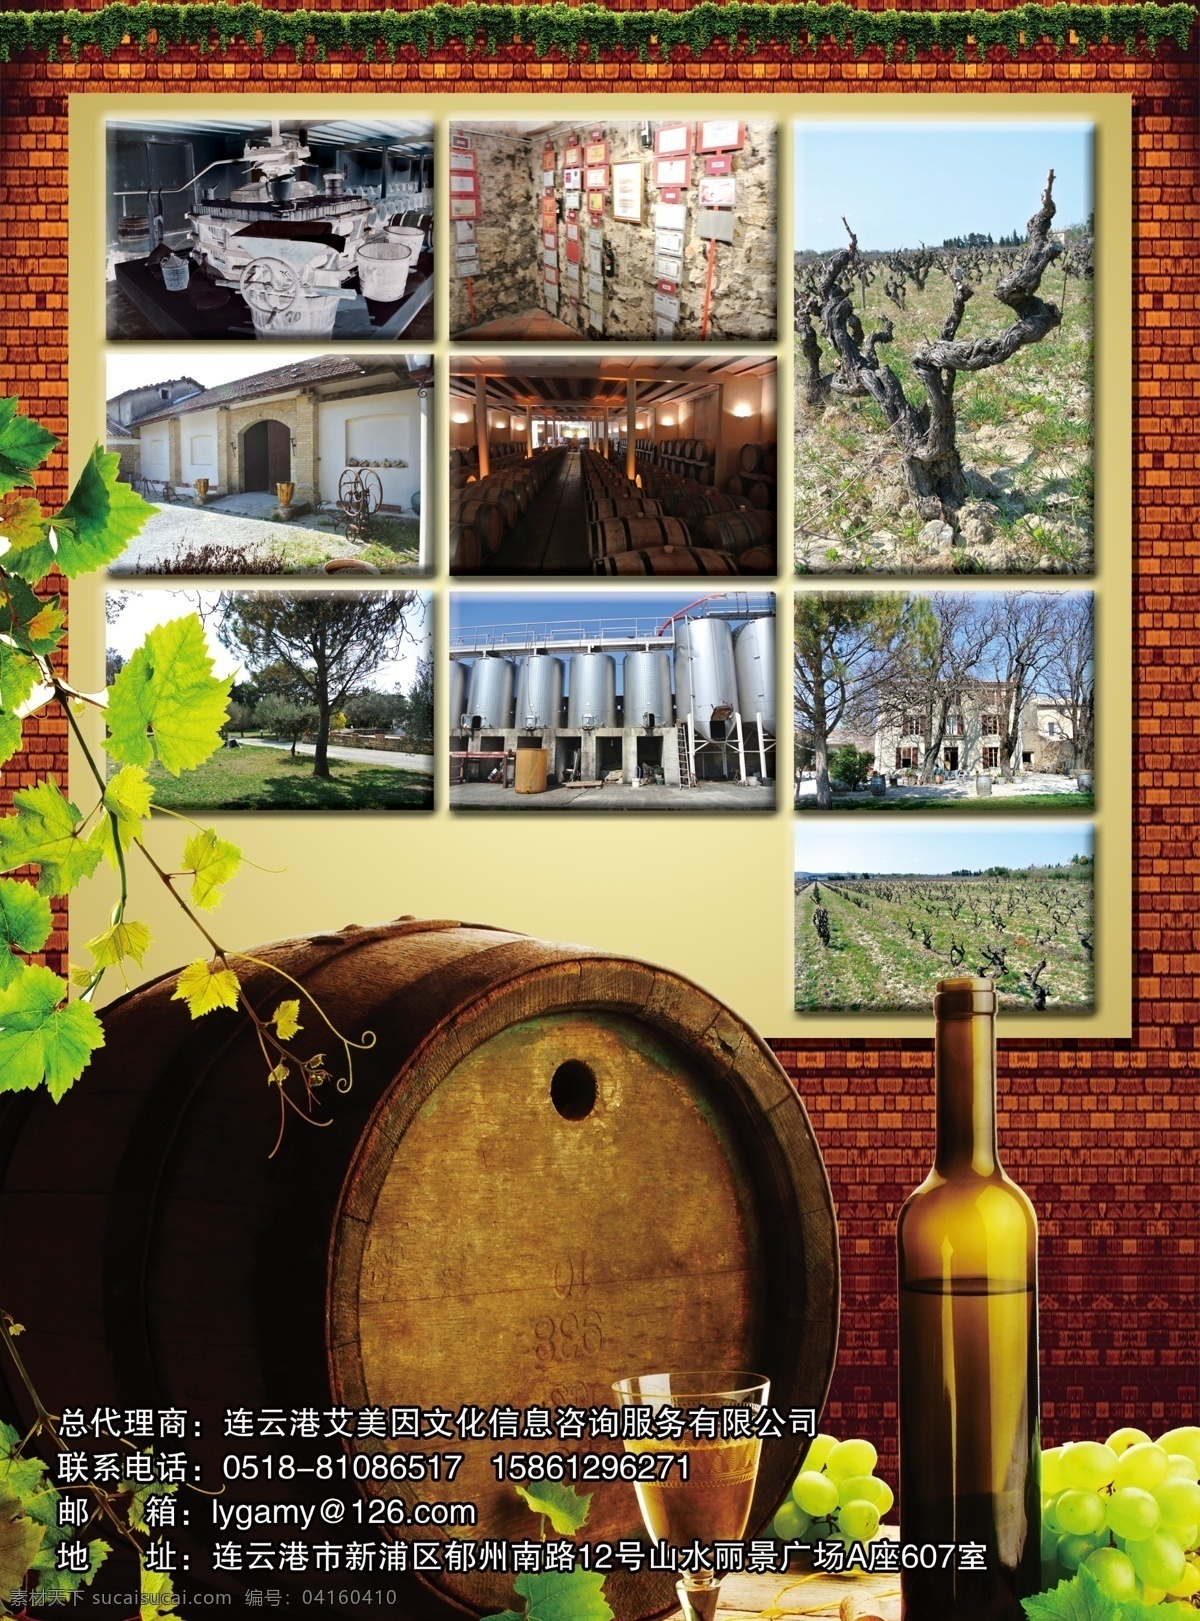 广告设计模板 酒窖 葡萄酒 葡萄酒宣传 源文件 照片墙 宣传 模板下载 葡萄酒厂 宣传海报 宣传单 彩页 dm